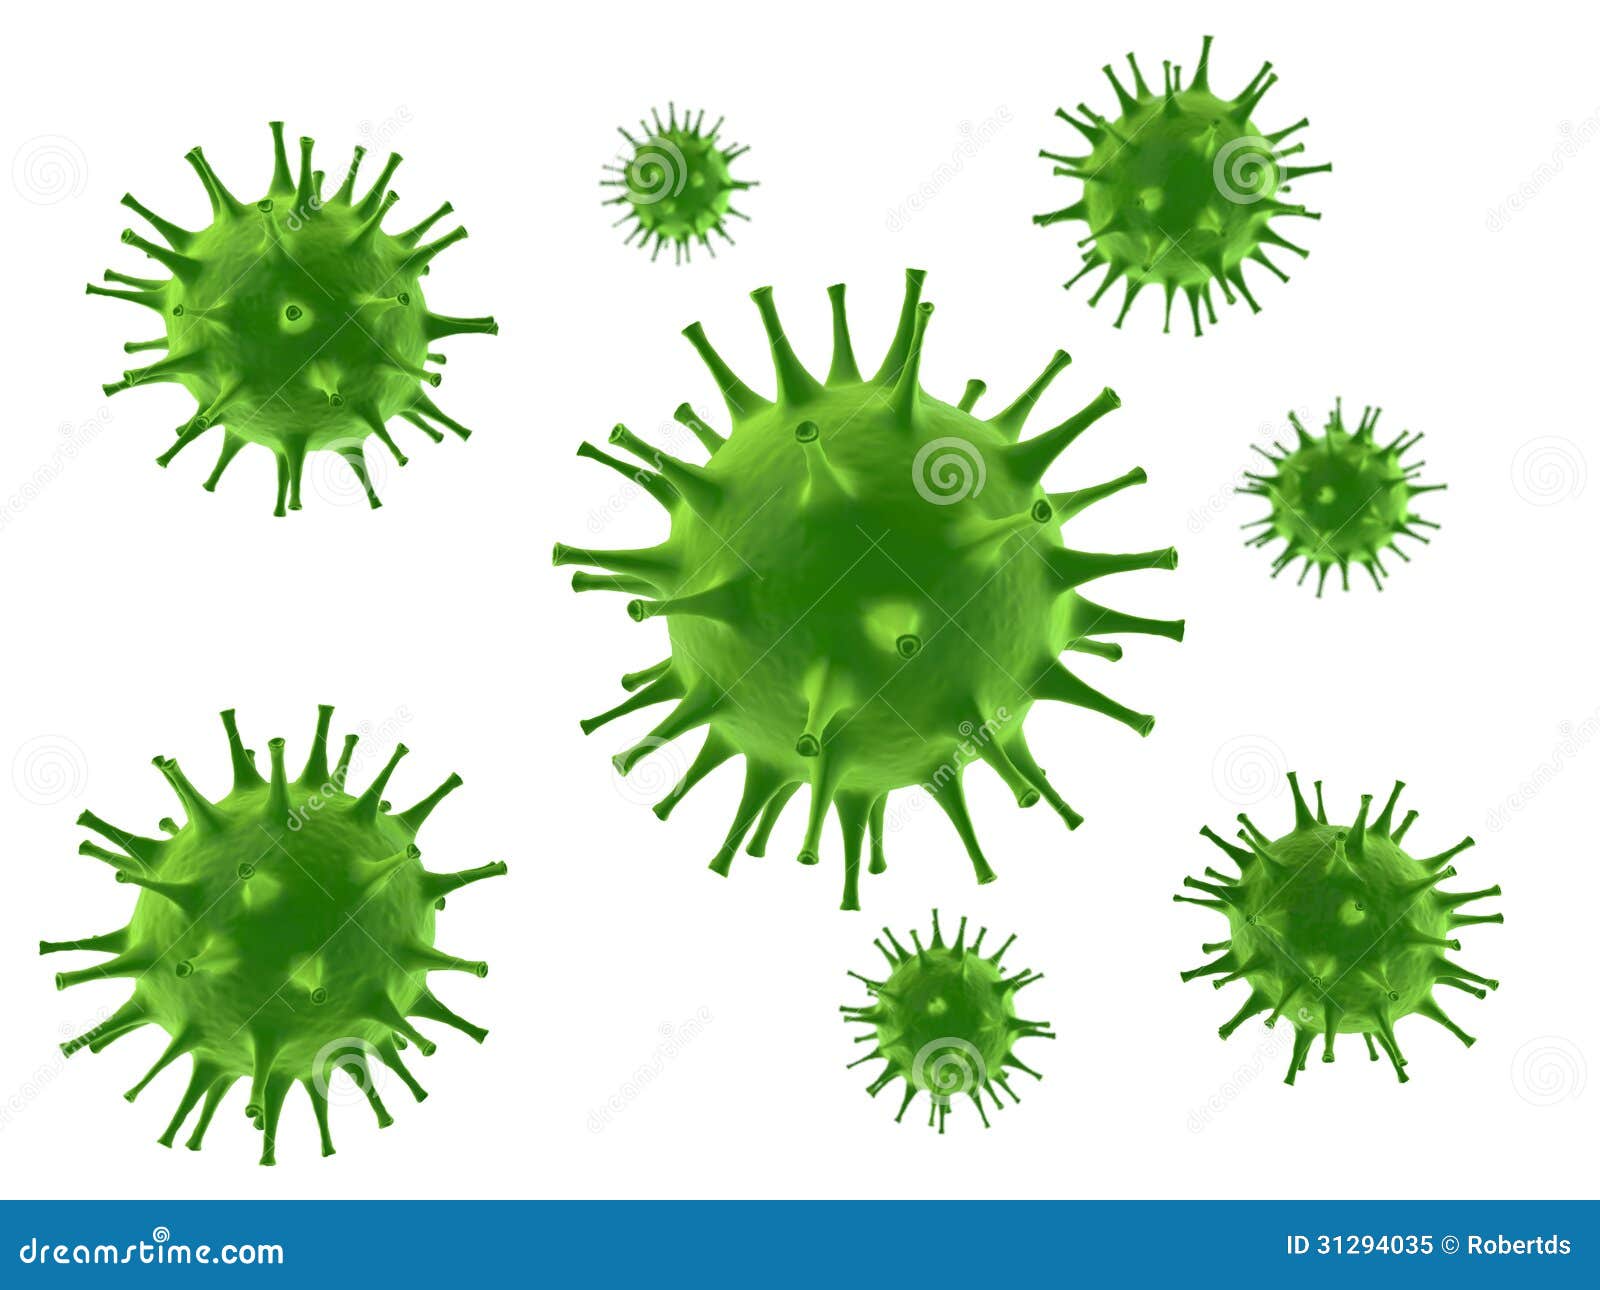 Вирус слизь. Зеленая слизь вирус. Зеленые сопли это вирус или бактерии. Зеленые сопли бактерии. Анимация микробиология на белом фоне.